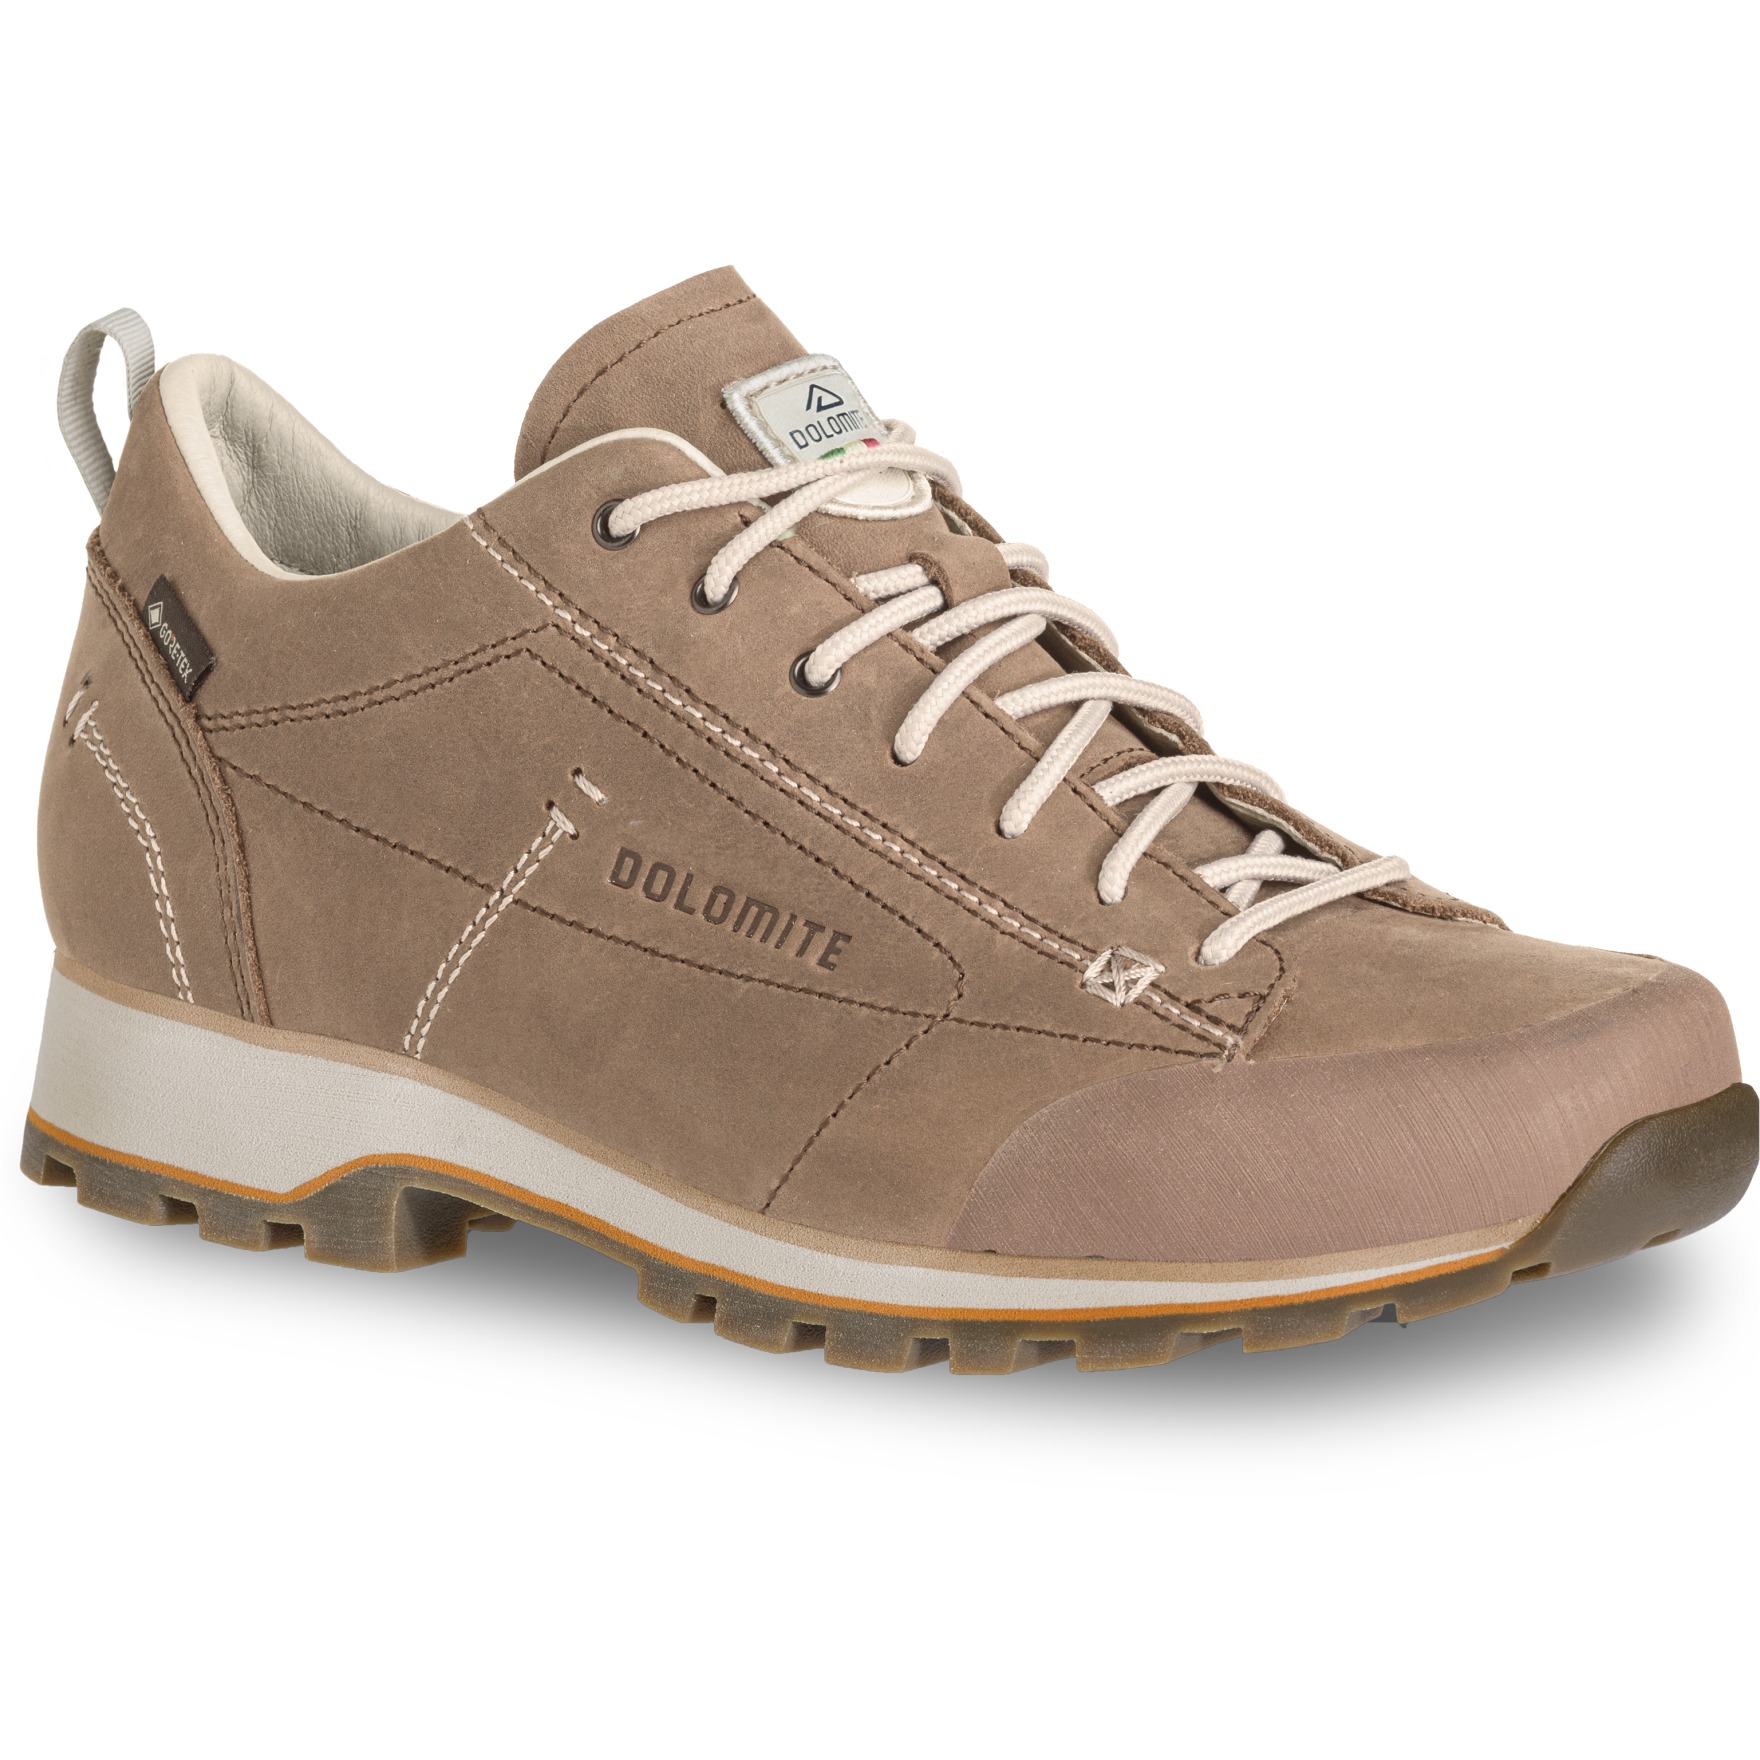 Produktbild von Dolomite 54 Low Fg GORE-TEX Schuhe Damen - taupe beige